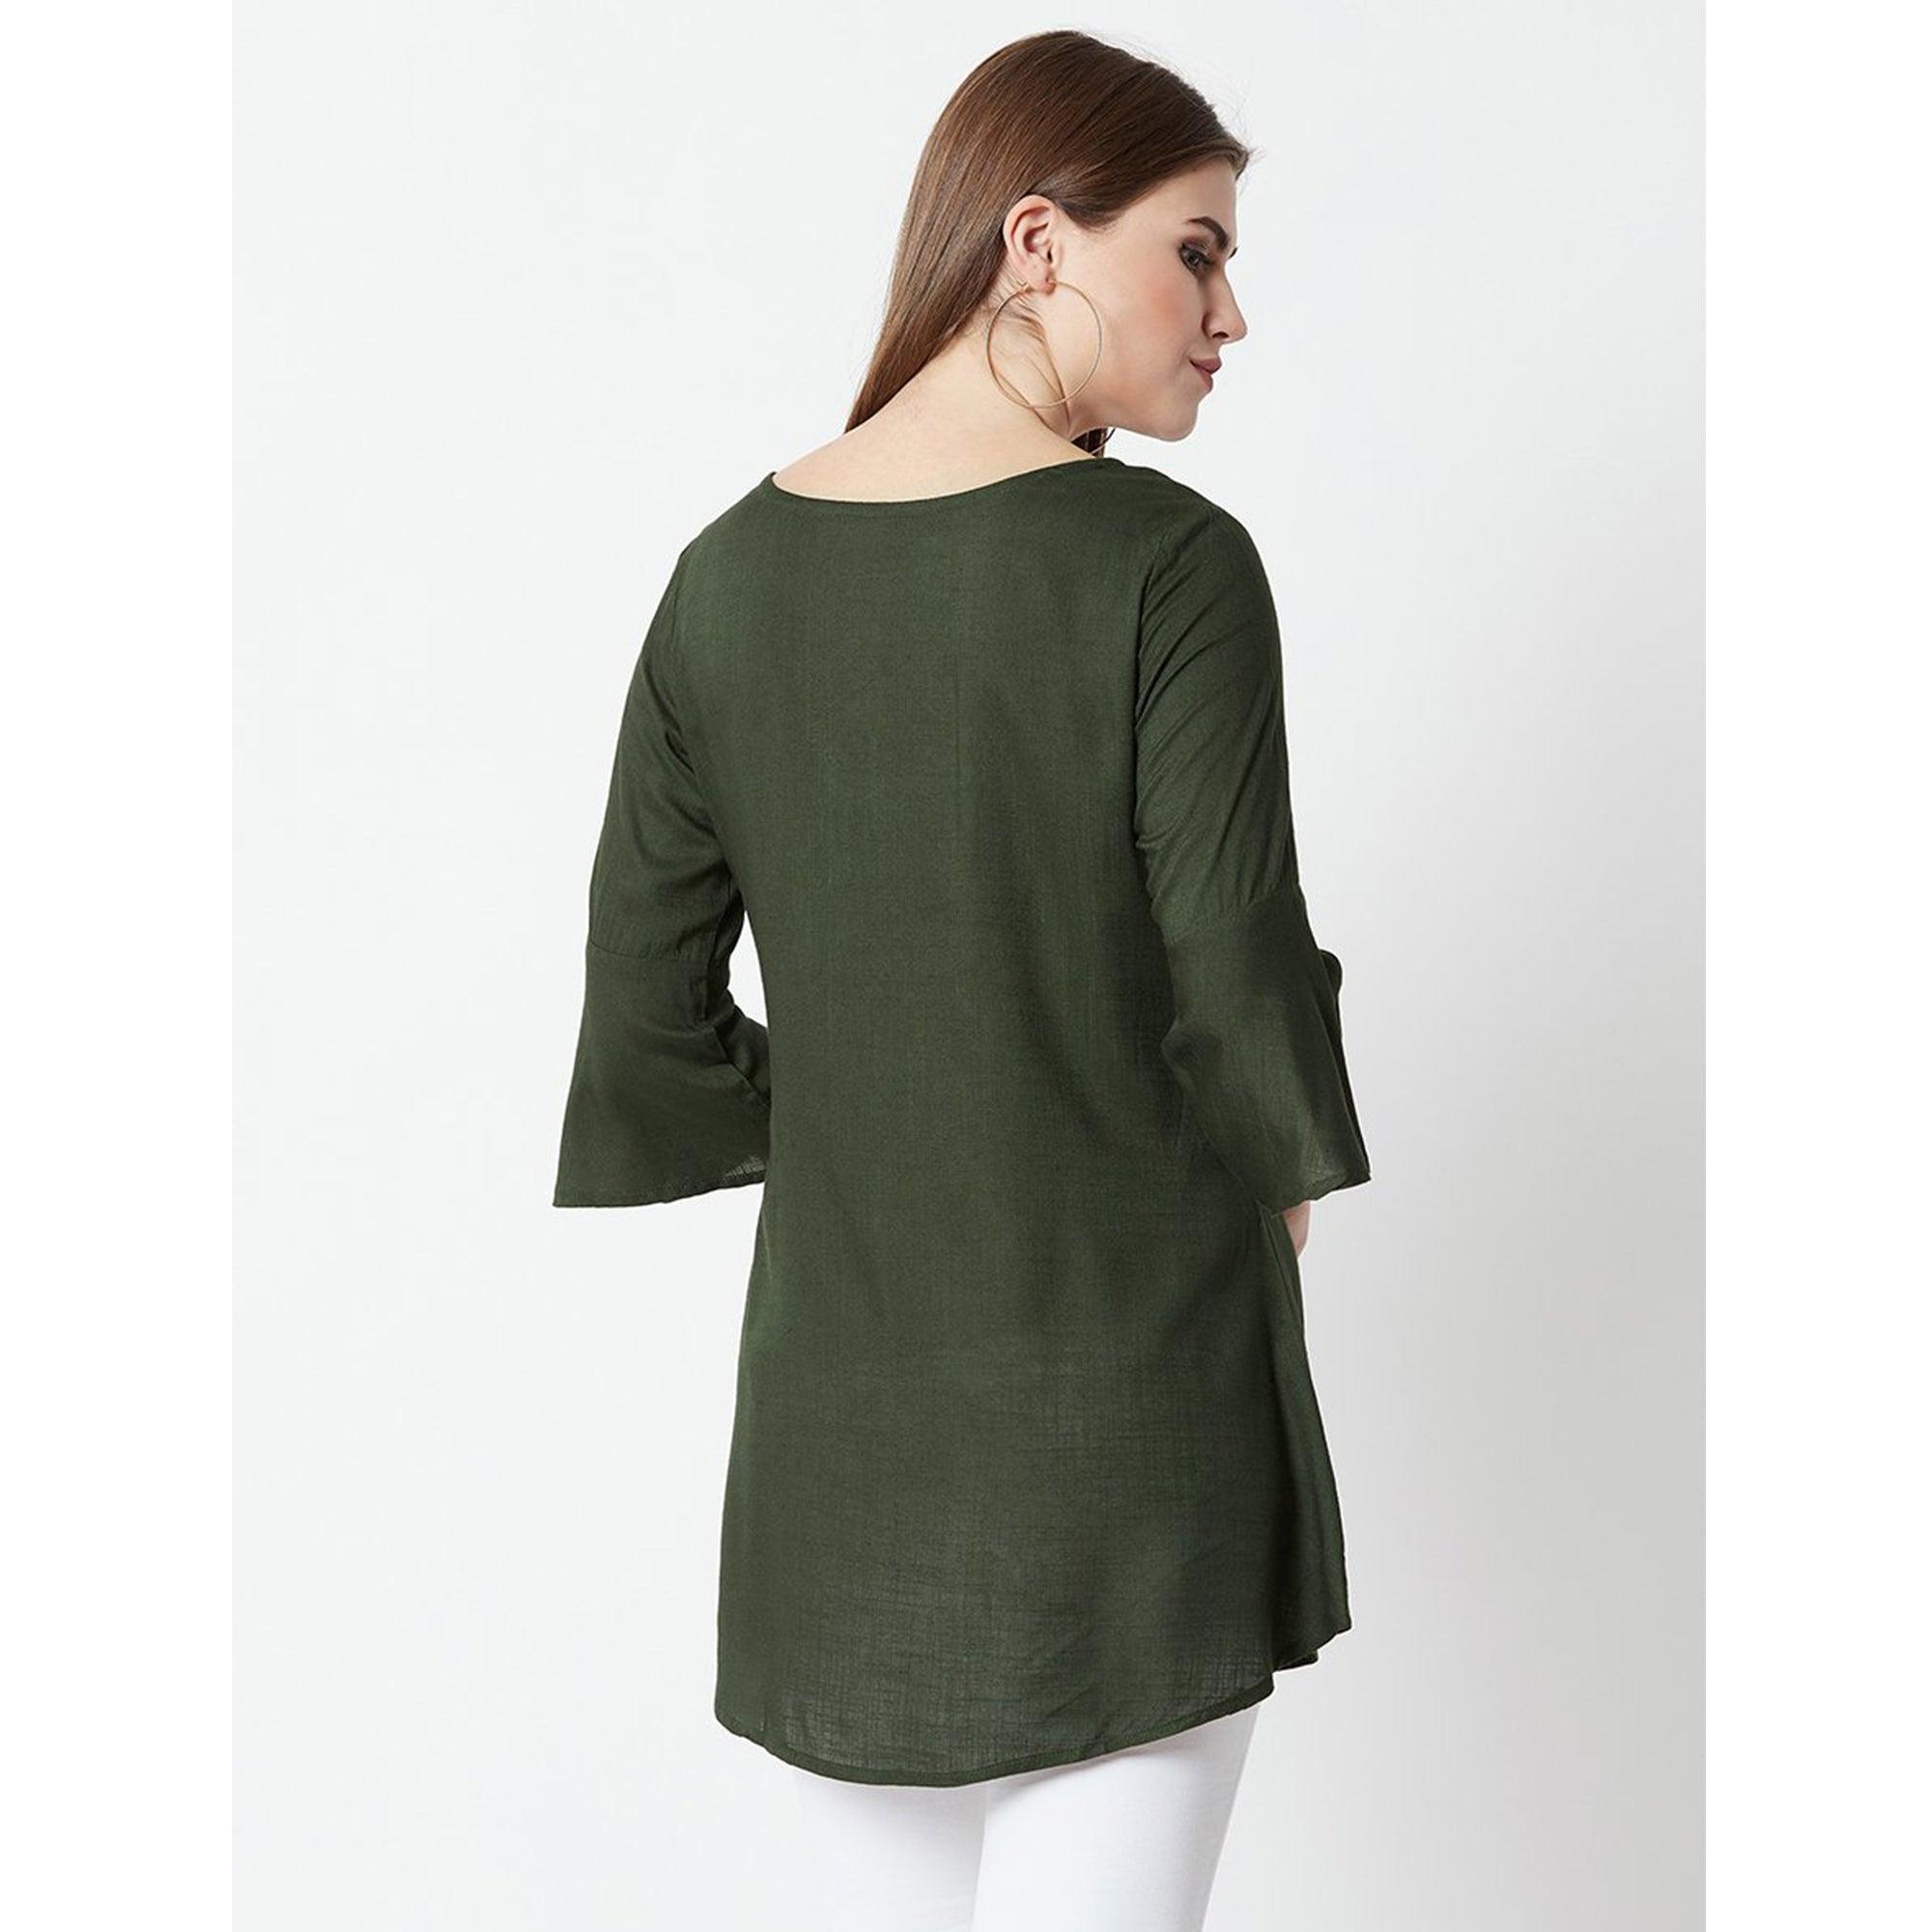 Dark Olive Green Casual Wear Hand Embroidered Designer Cotton Slub Top - Peachmode